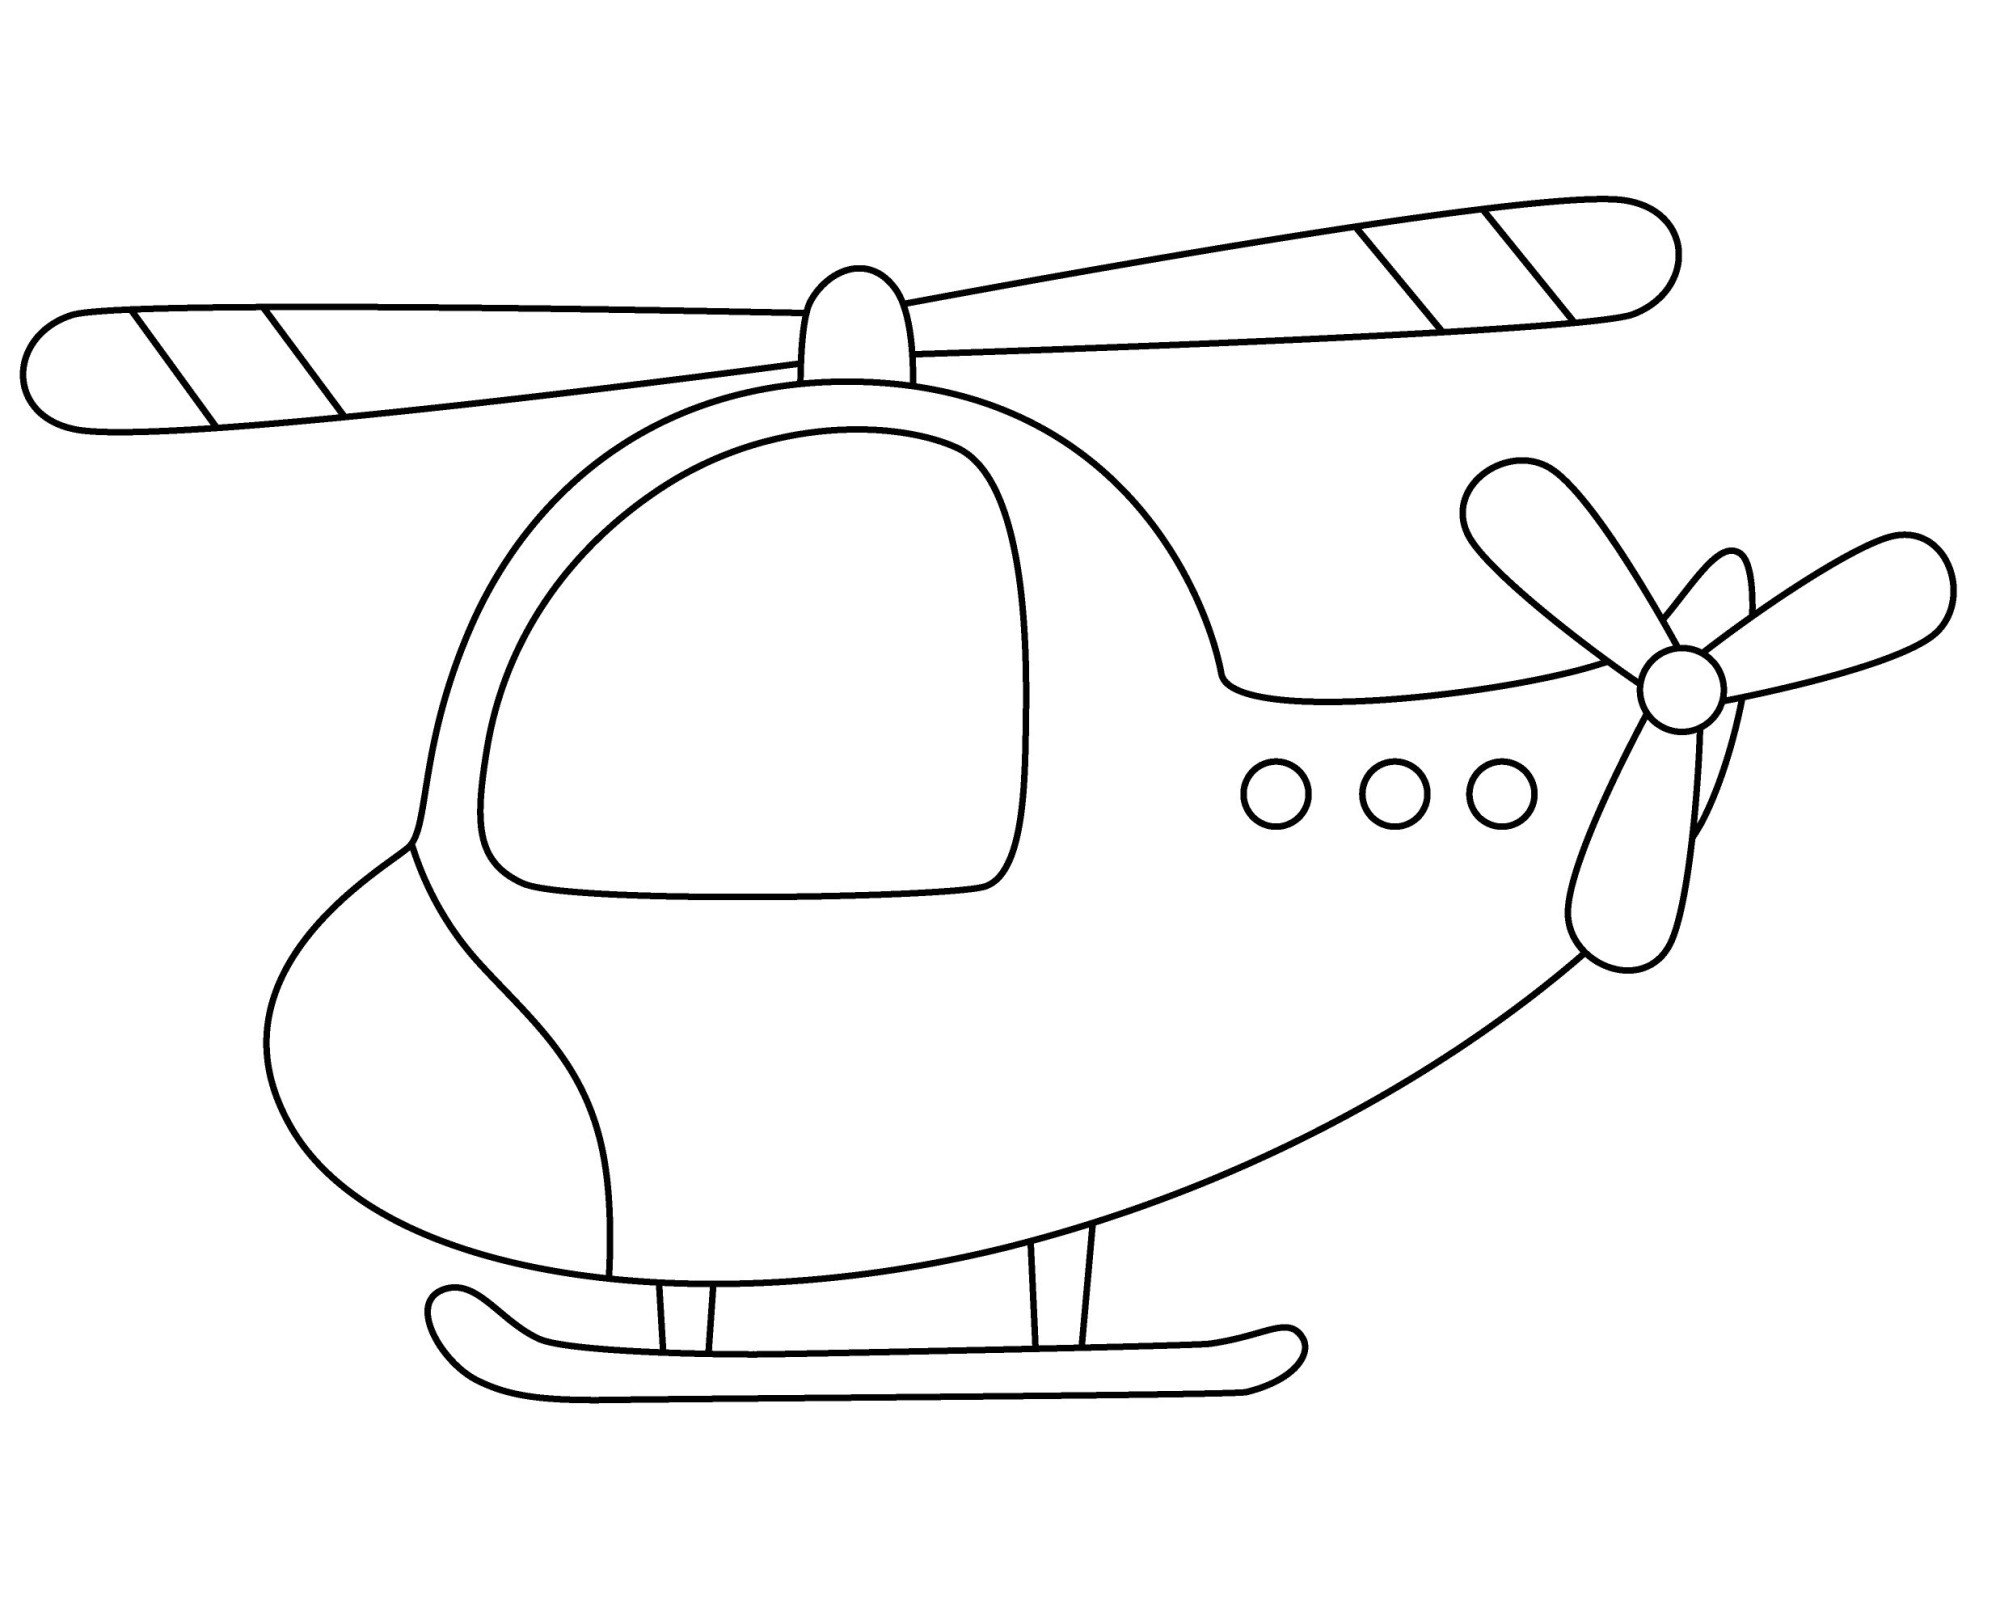 Раскраска для детей: миниатюрный вертолет